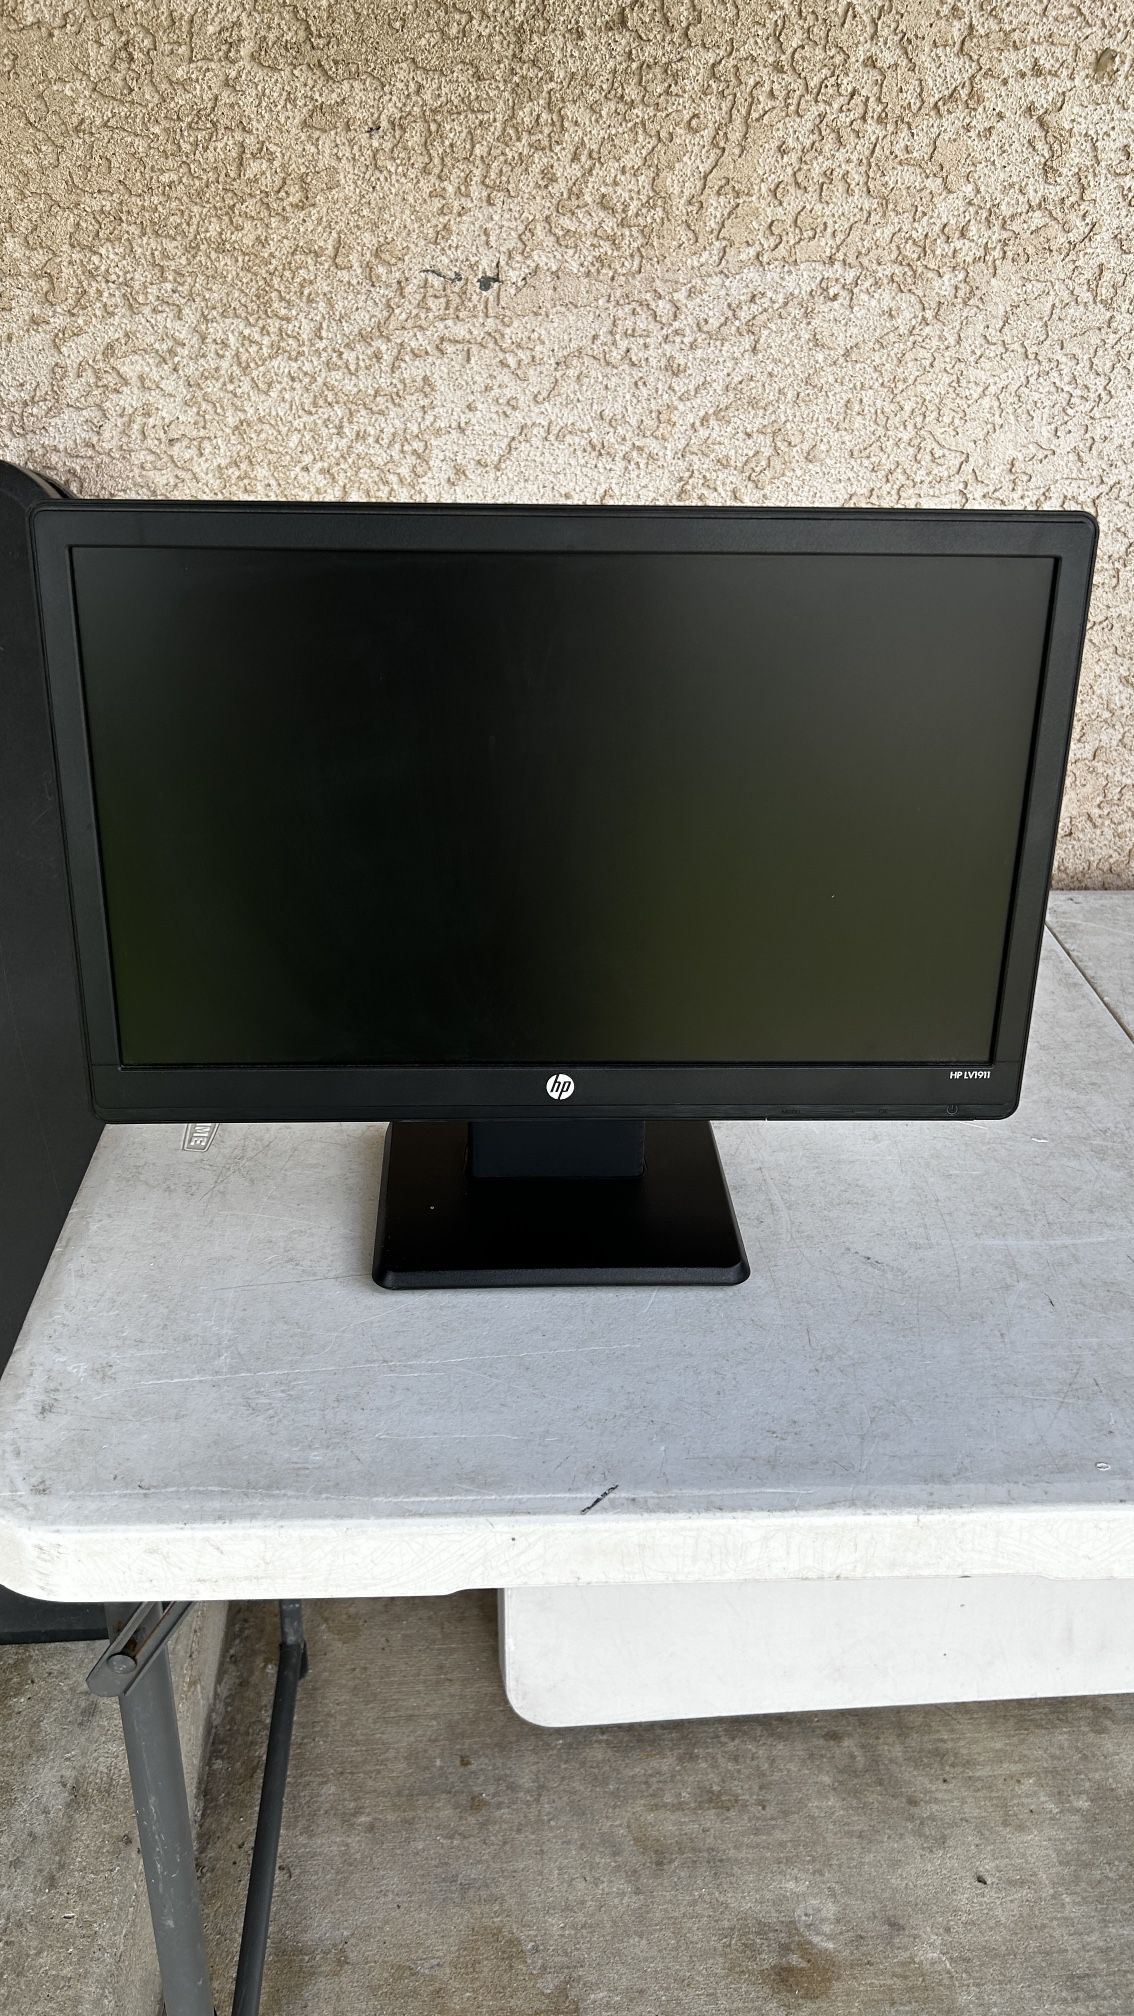 Computer Monitor Display Screens